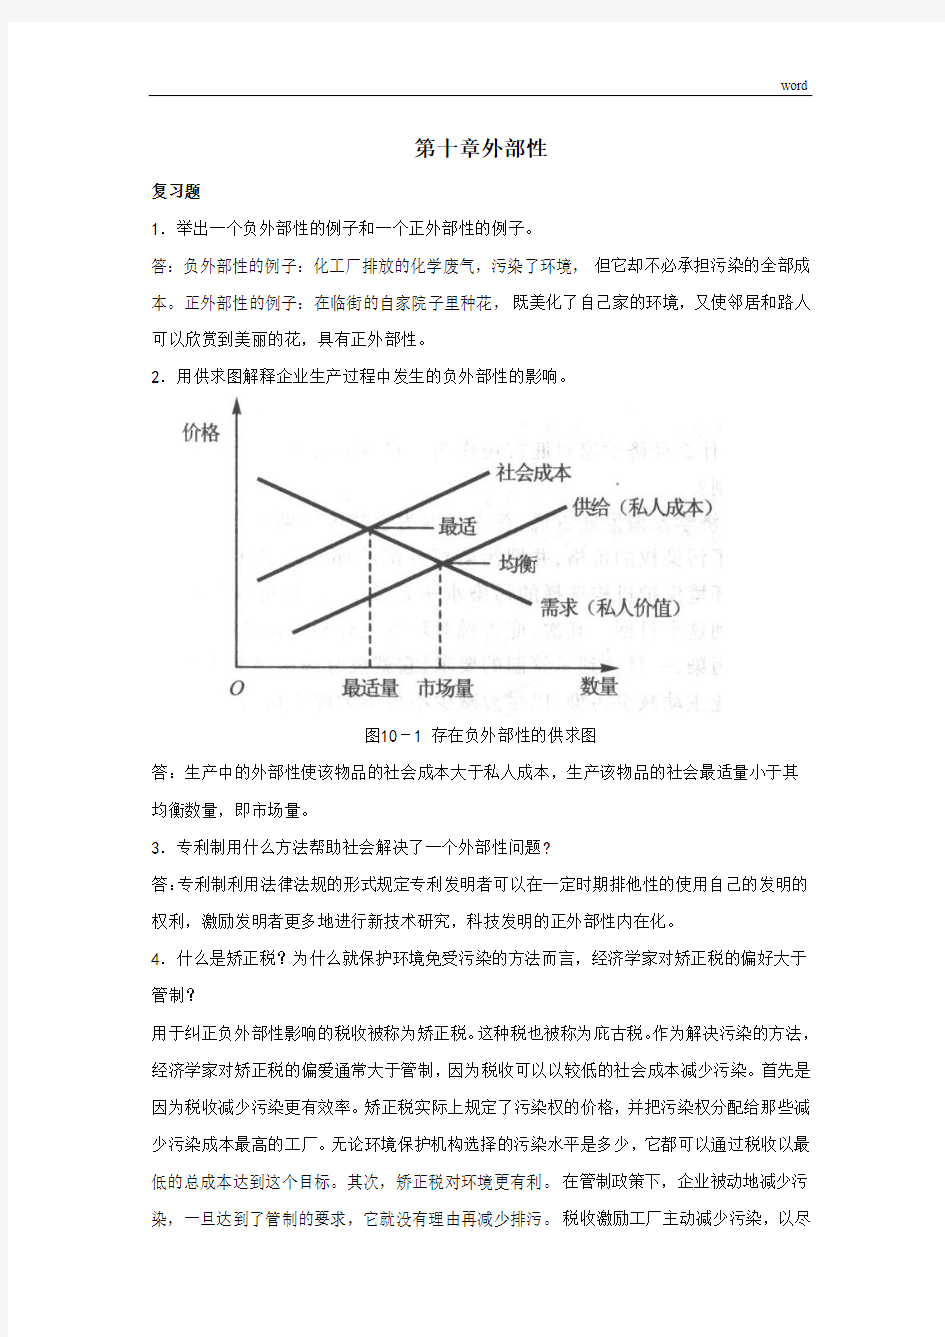 曼昆《经济学原理》第6版-微观经济学分册-课后习题答案-第10章